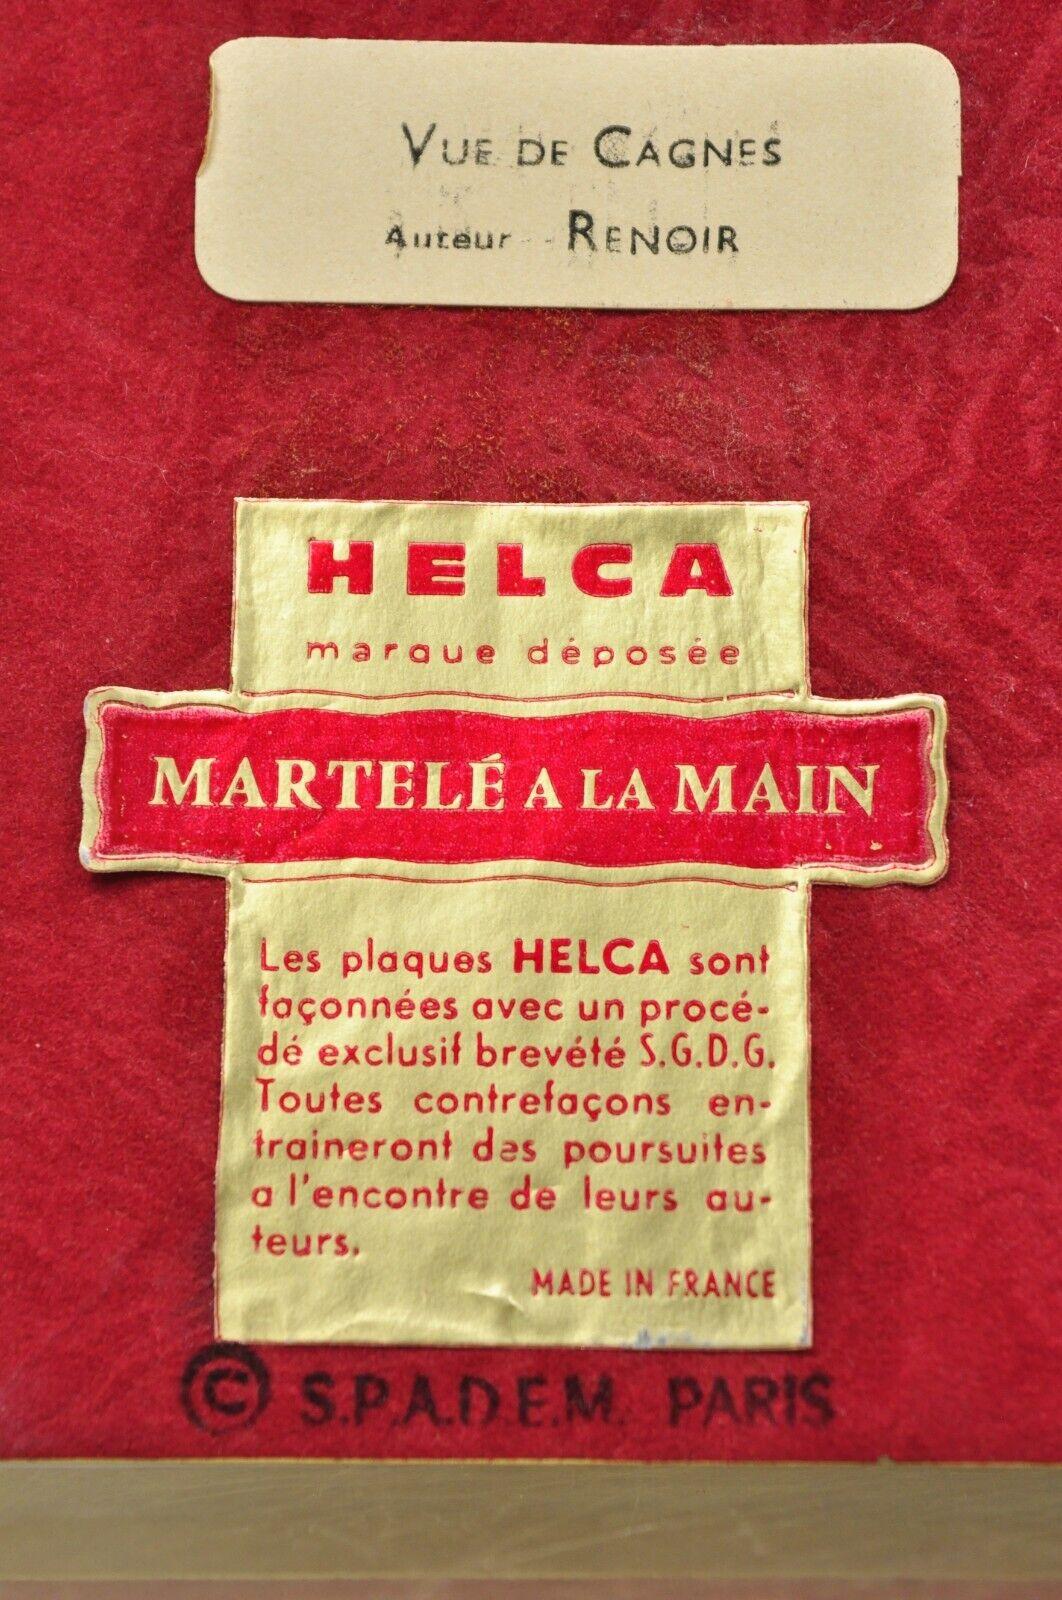 Metal Helca Martele A La Main Hammered Enamel Painting Renoir Vue de Cagnes For Sale